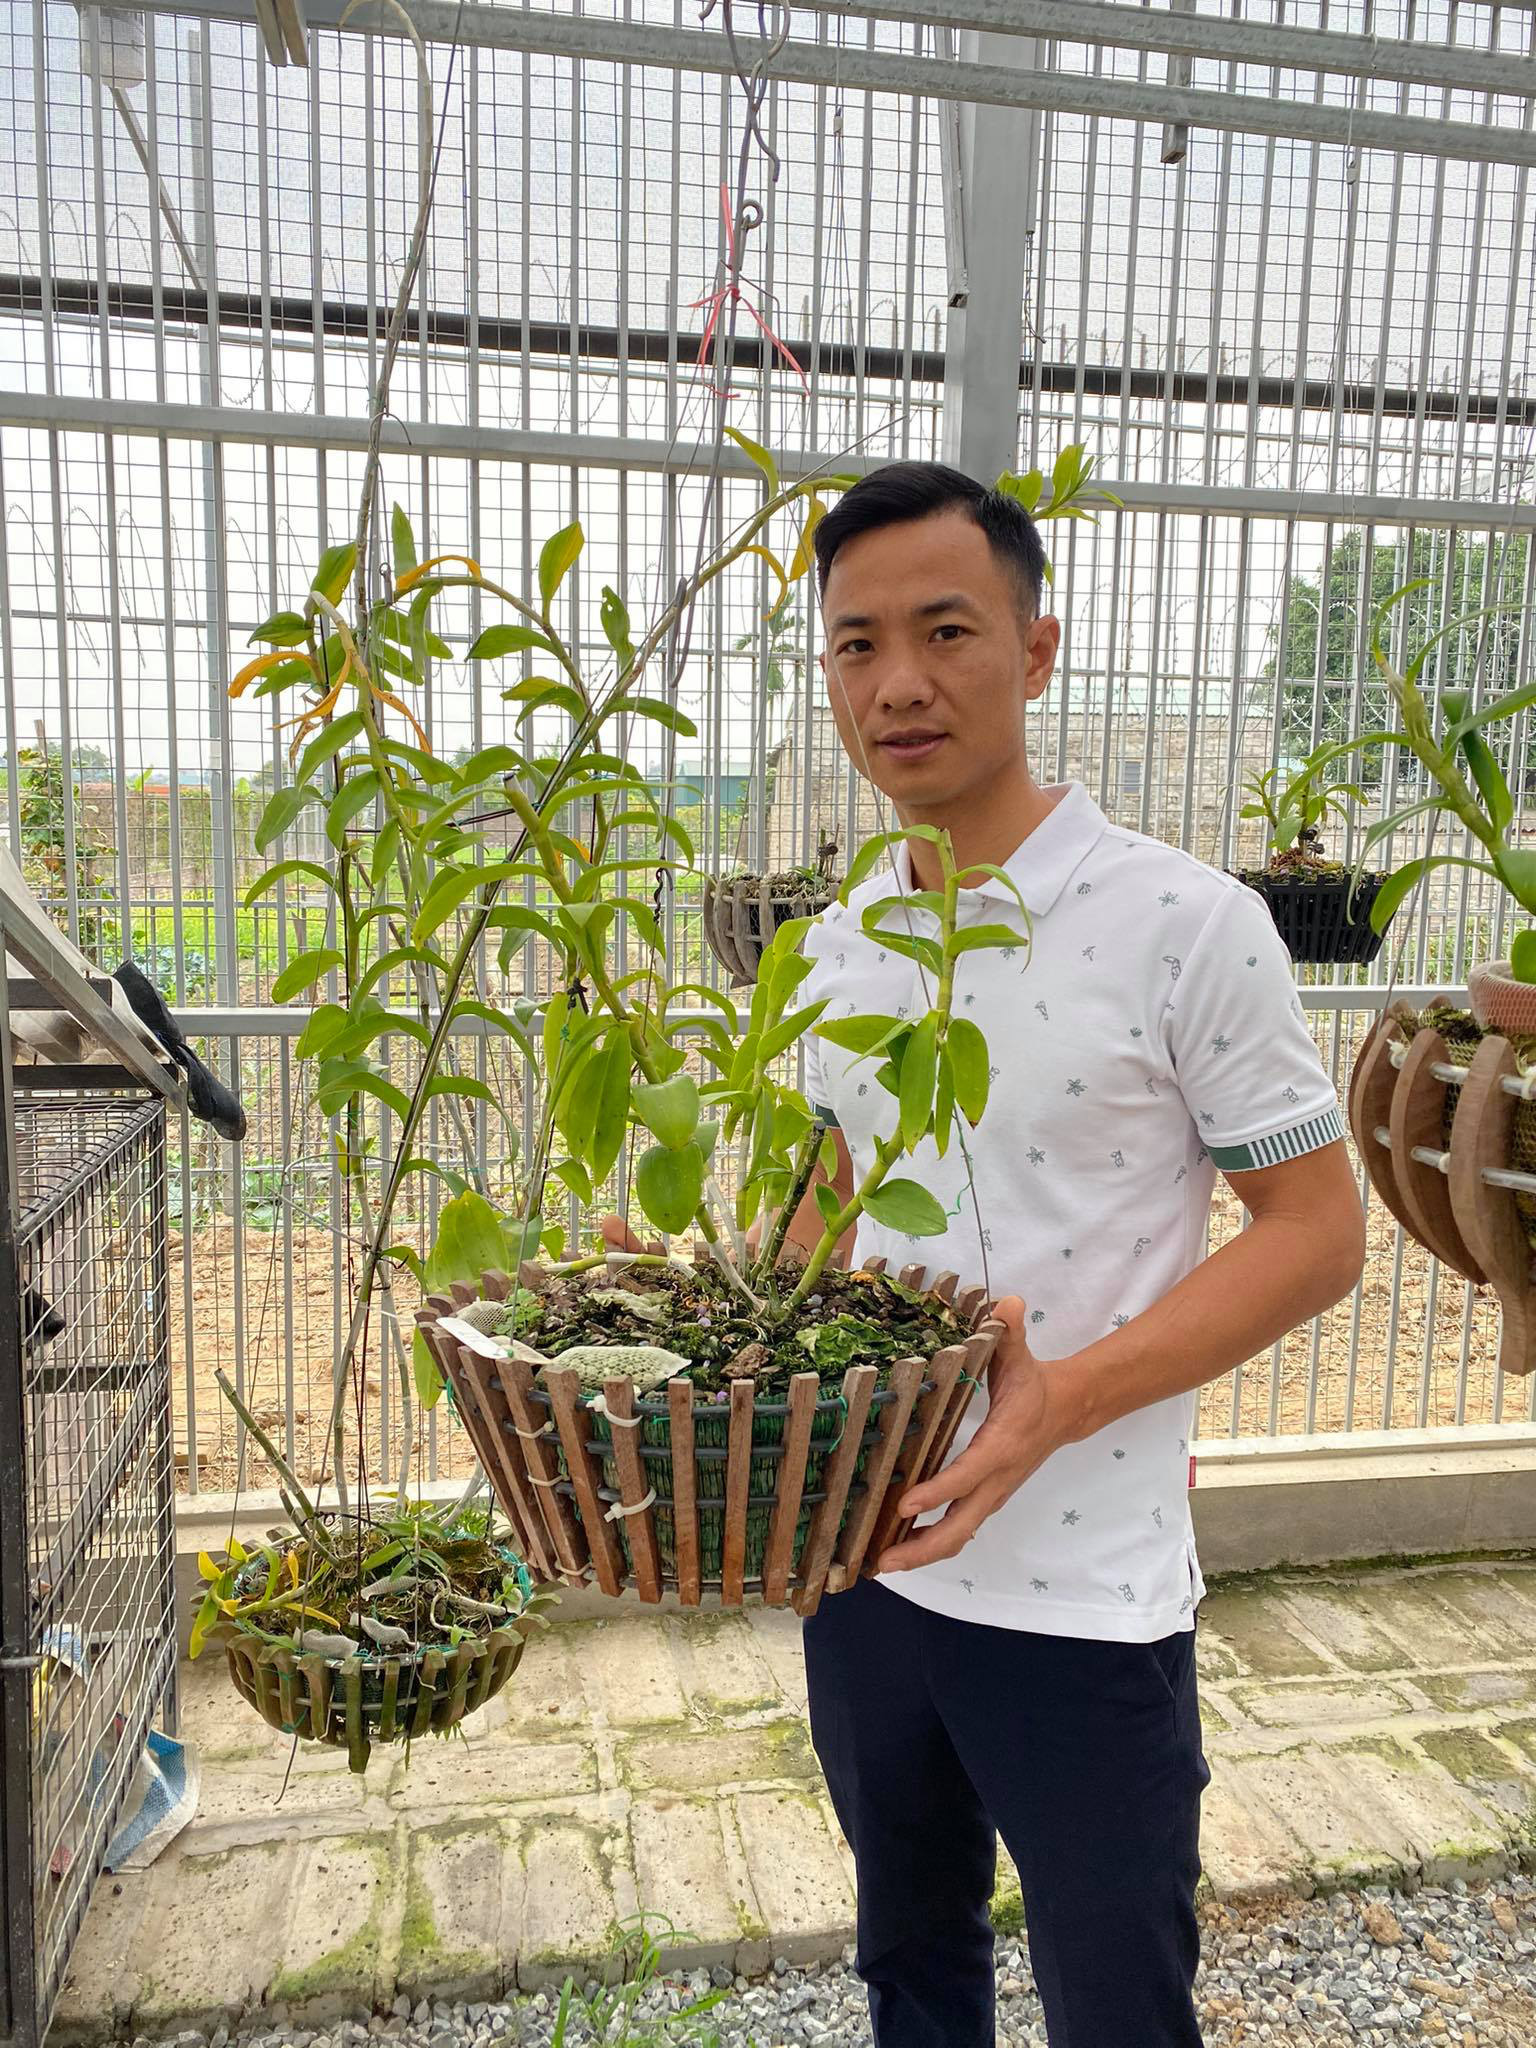 Ông chủ vườn lan Sỹ Trần: “Con nhà nòi” và hành trình gây dựng 2 vườn lan ở Thái Bình, Hải Dương - Ảnh 1.